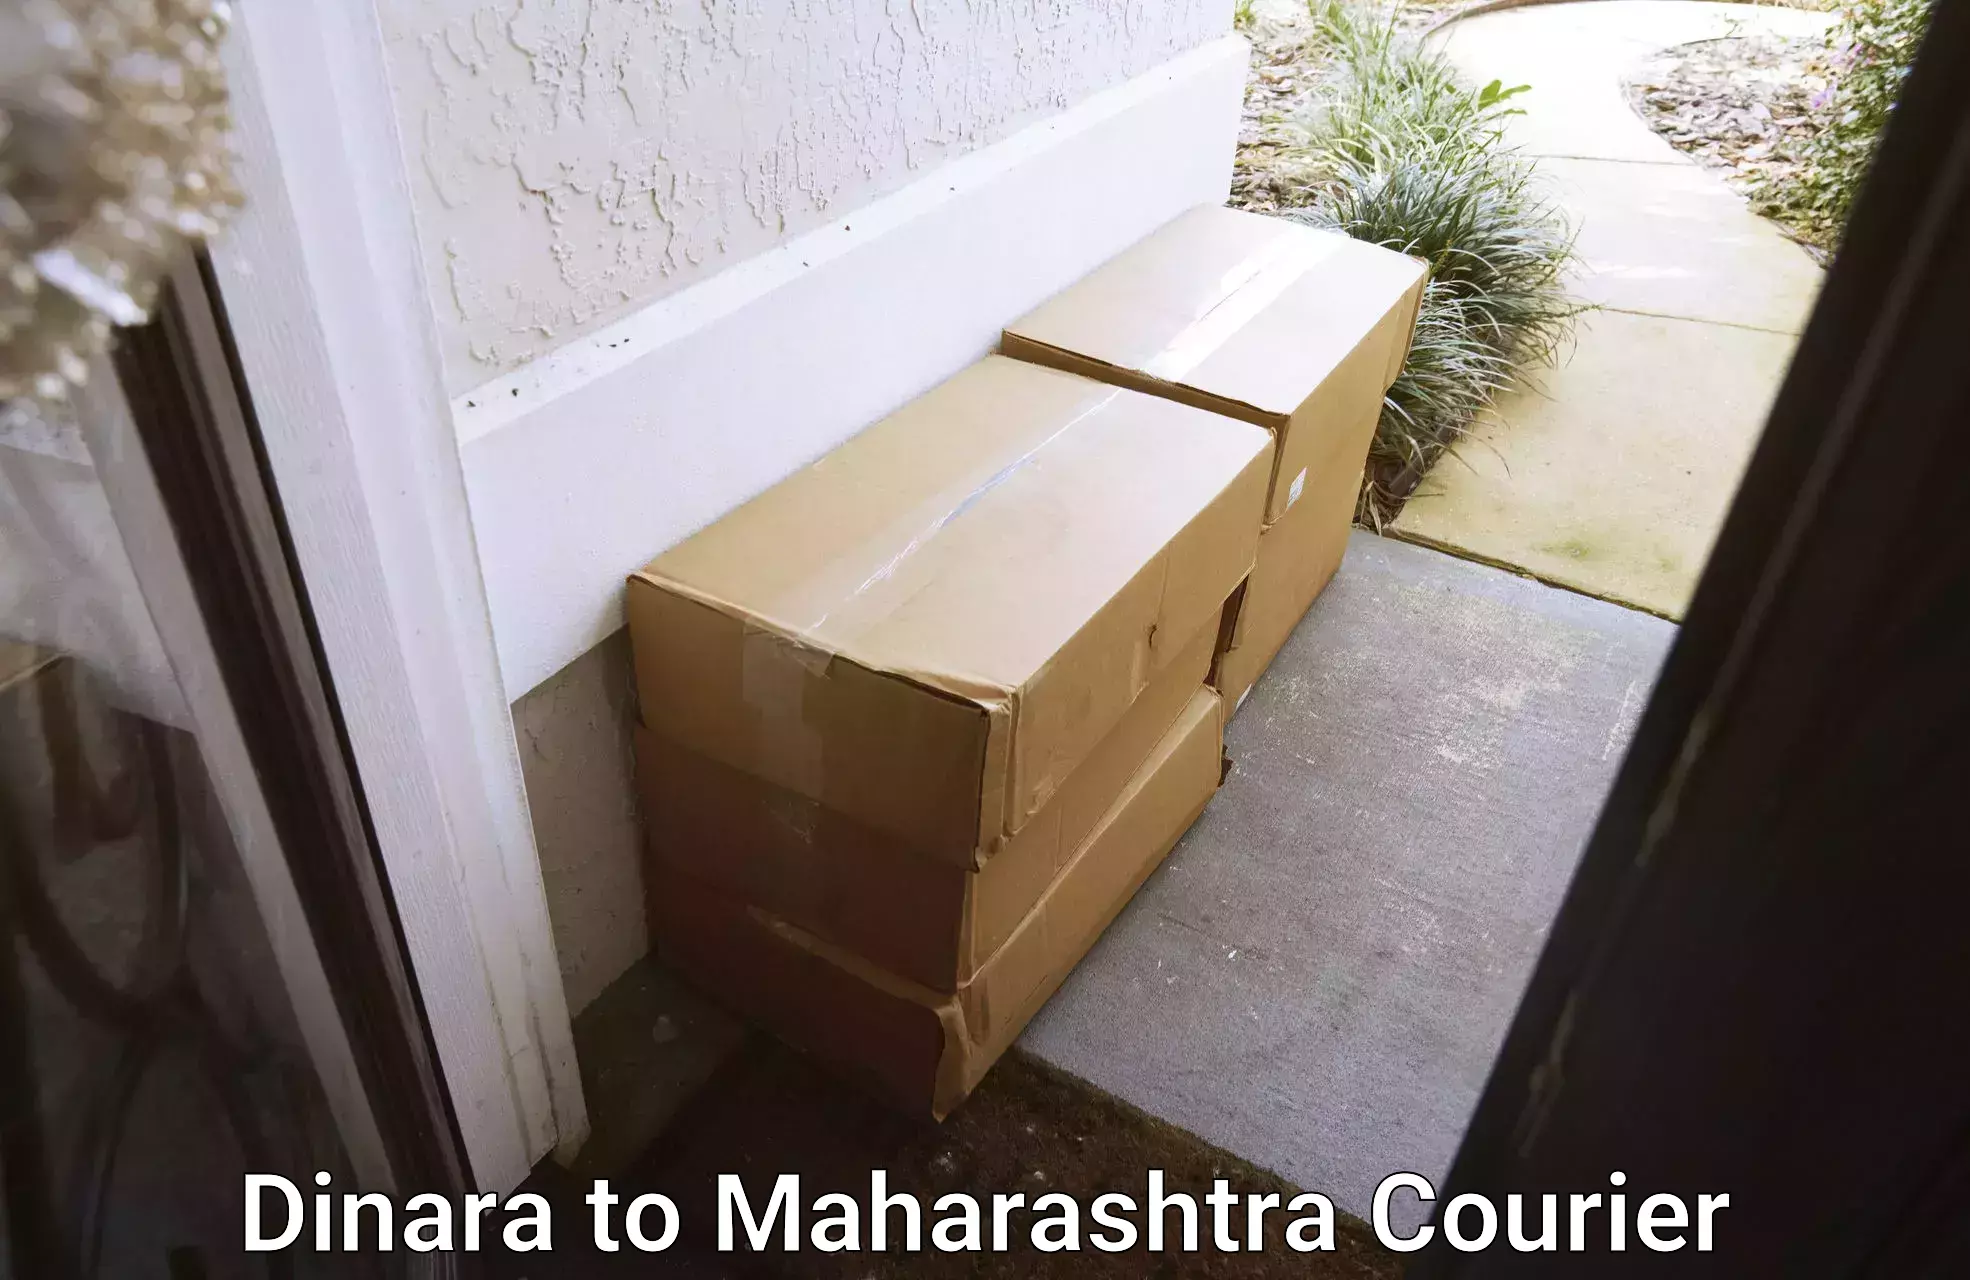 Household transport experts Dinara to Maharashtra